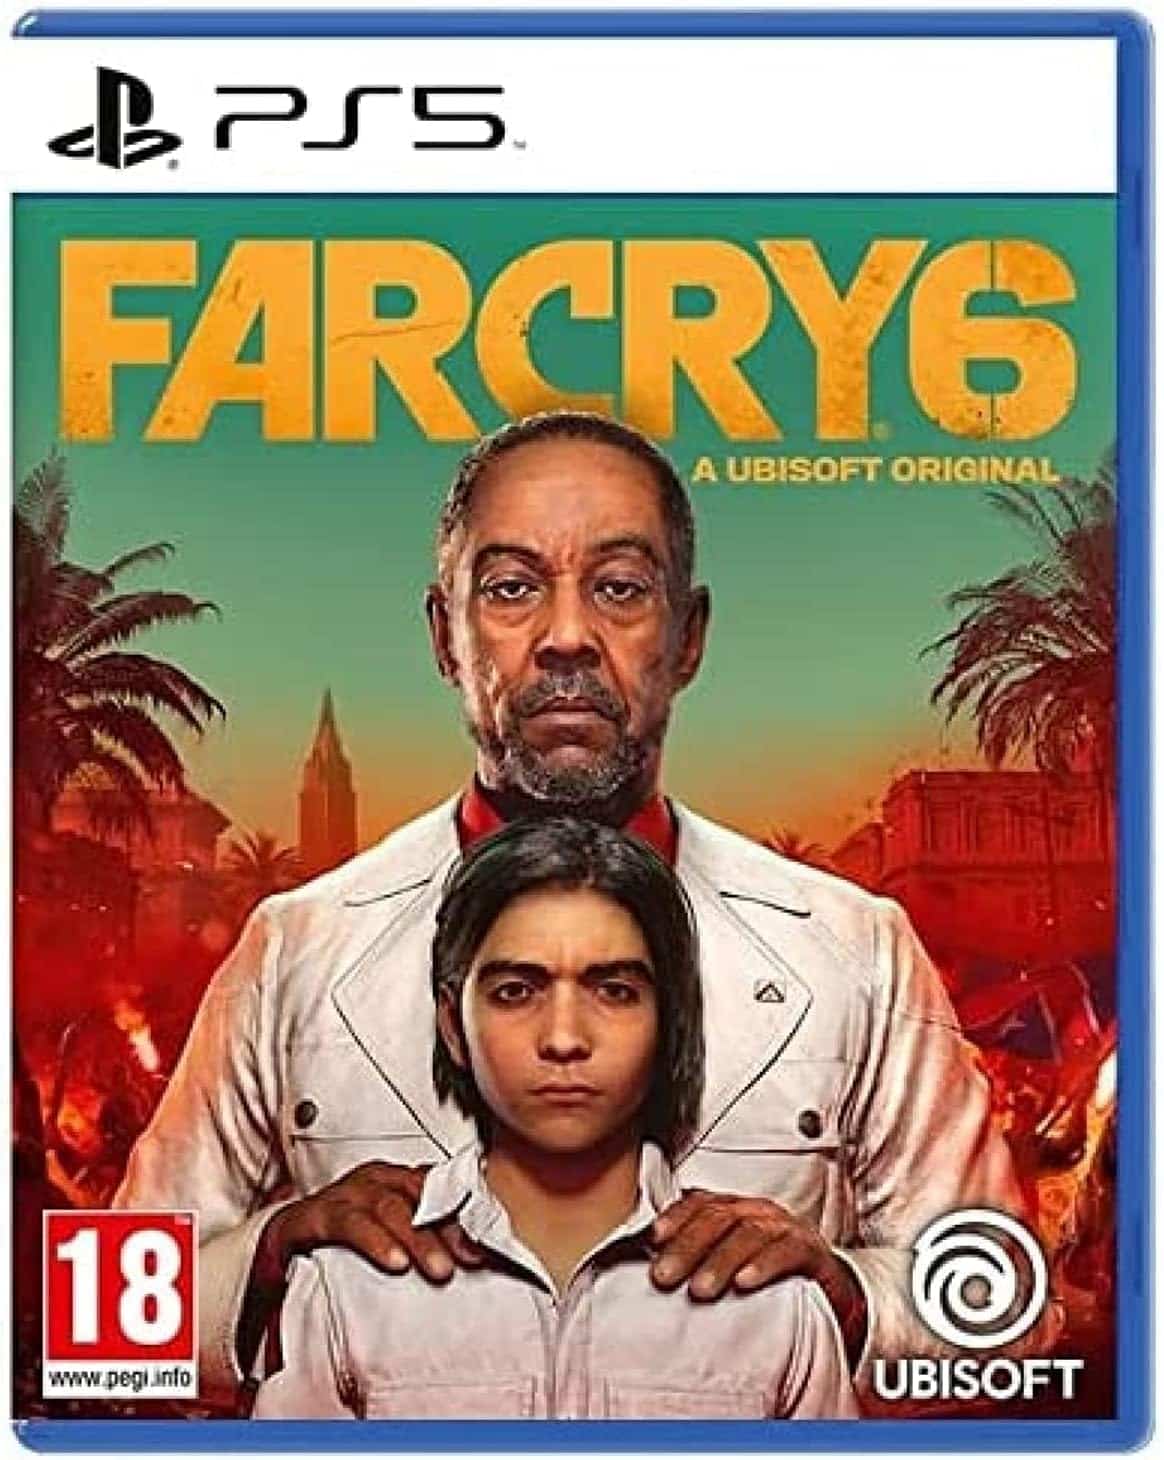 Far Cry 6 Playstation 5